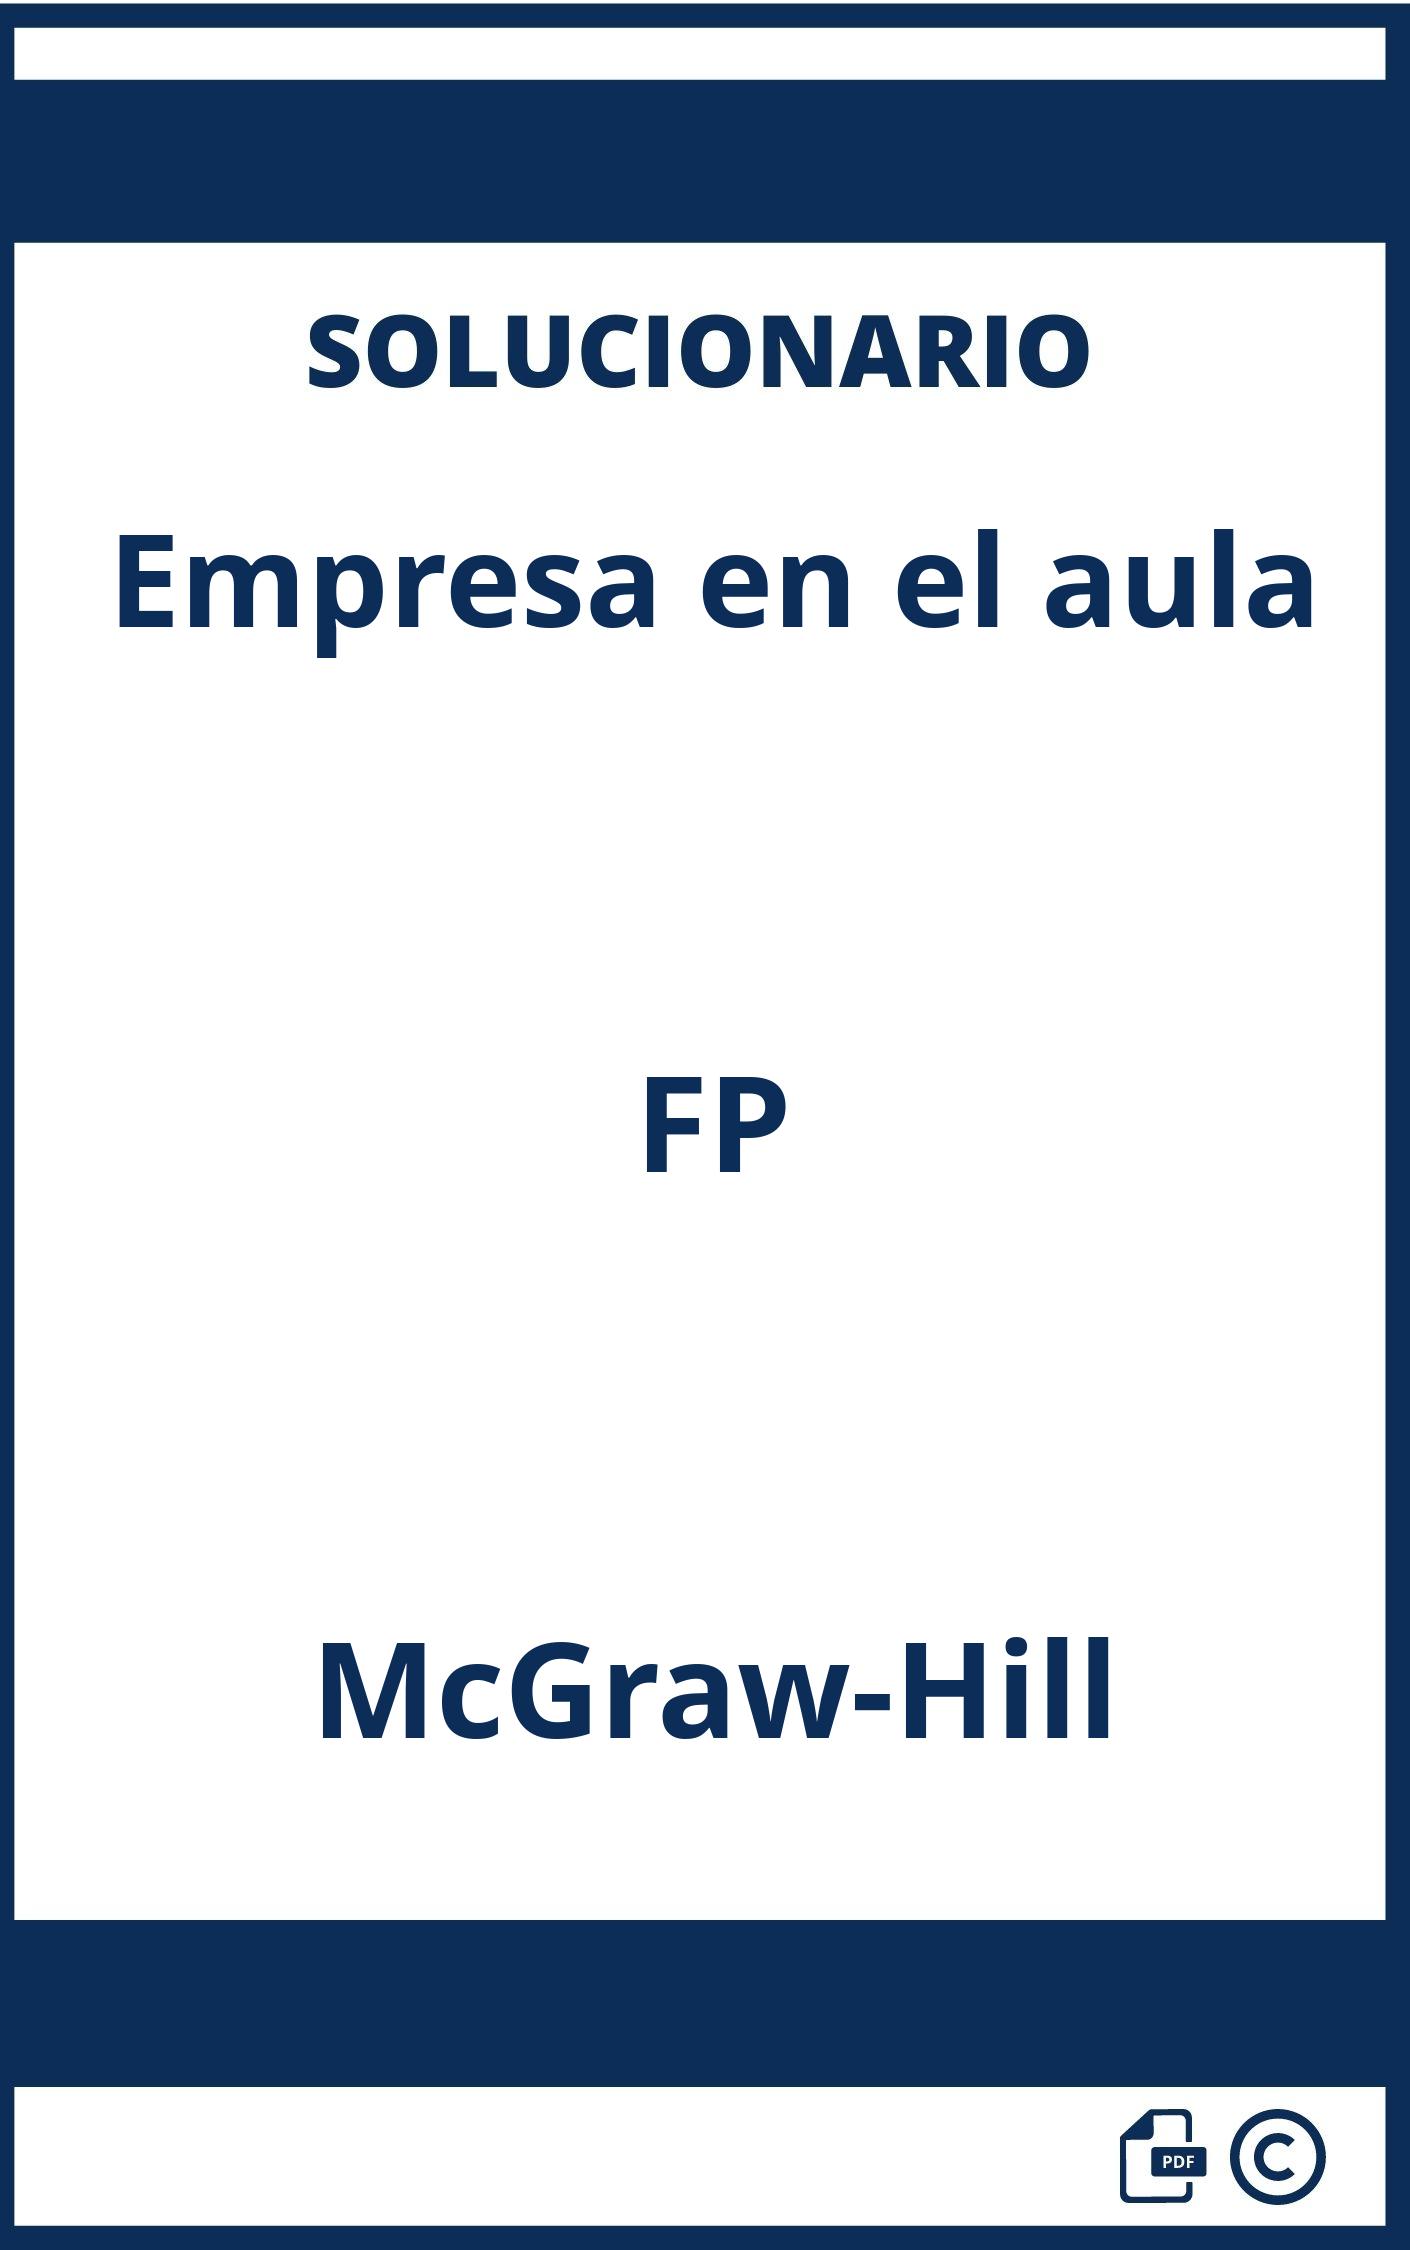 Solucionario Empresa en el aula FP McGraw-Hill